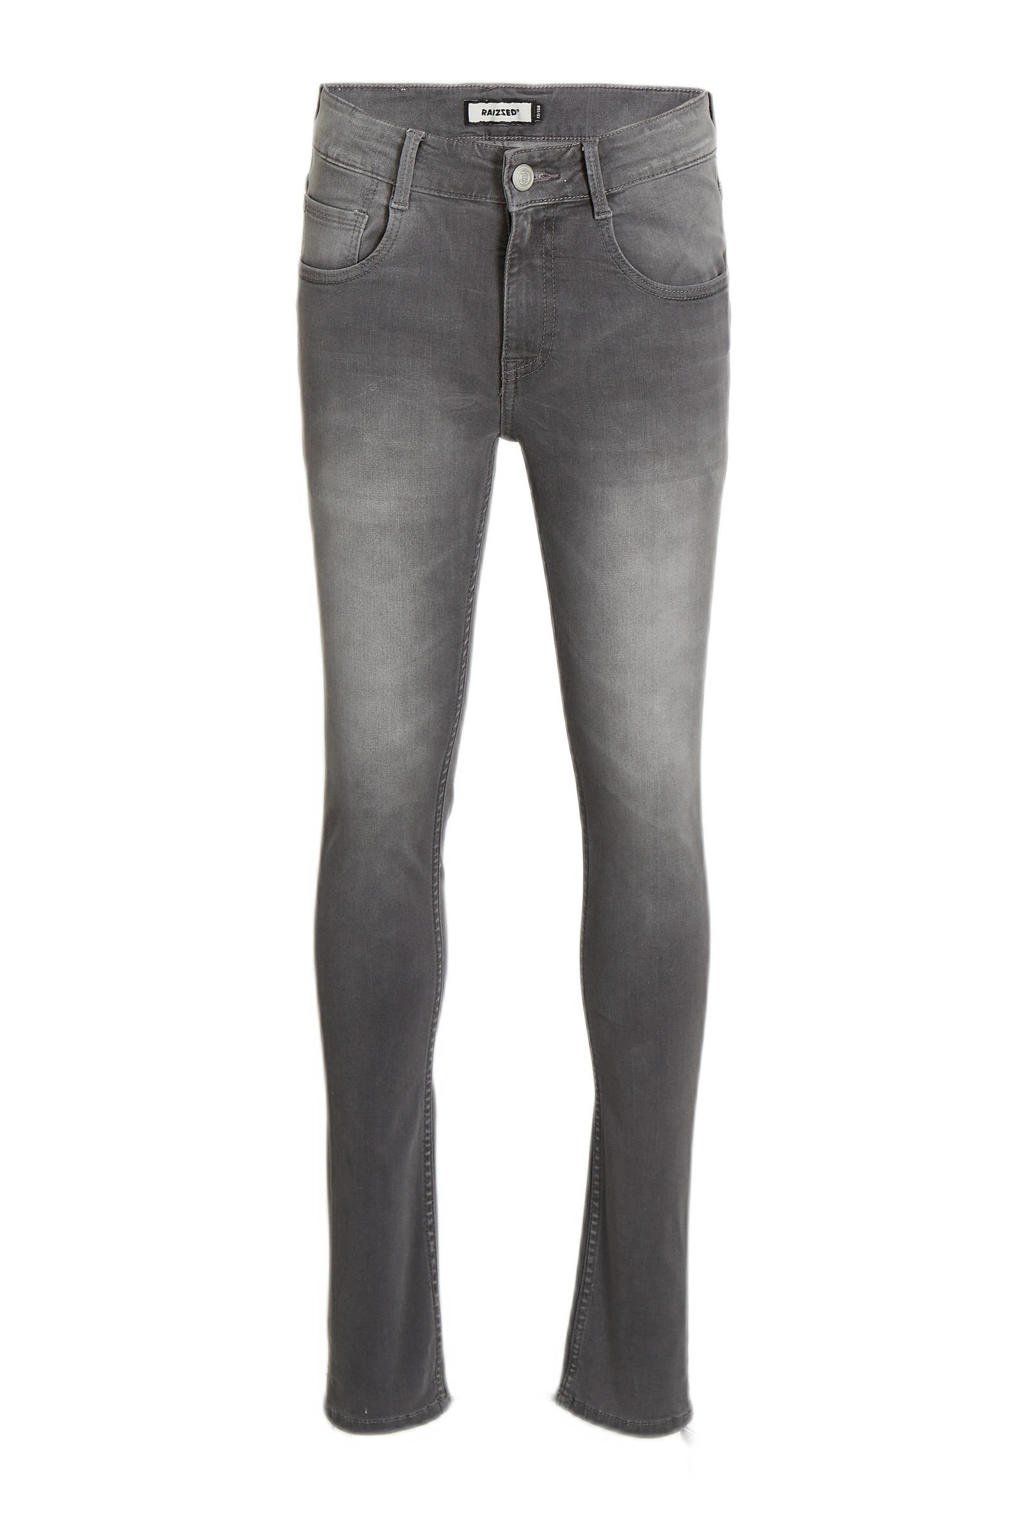 Grey denim jongens Raizzed slim fit jeans mid stone van katoen met regular waist